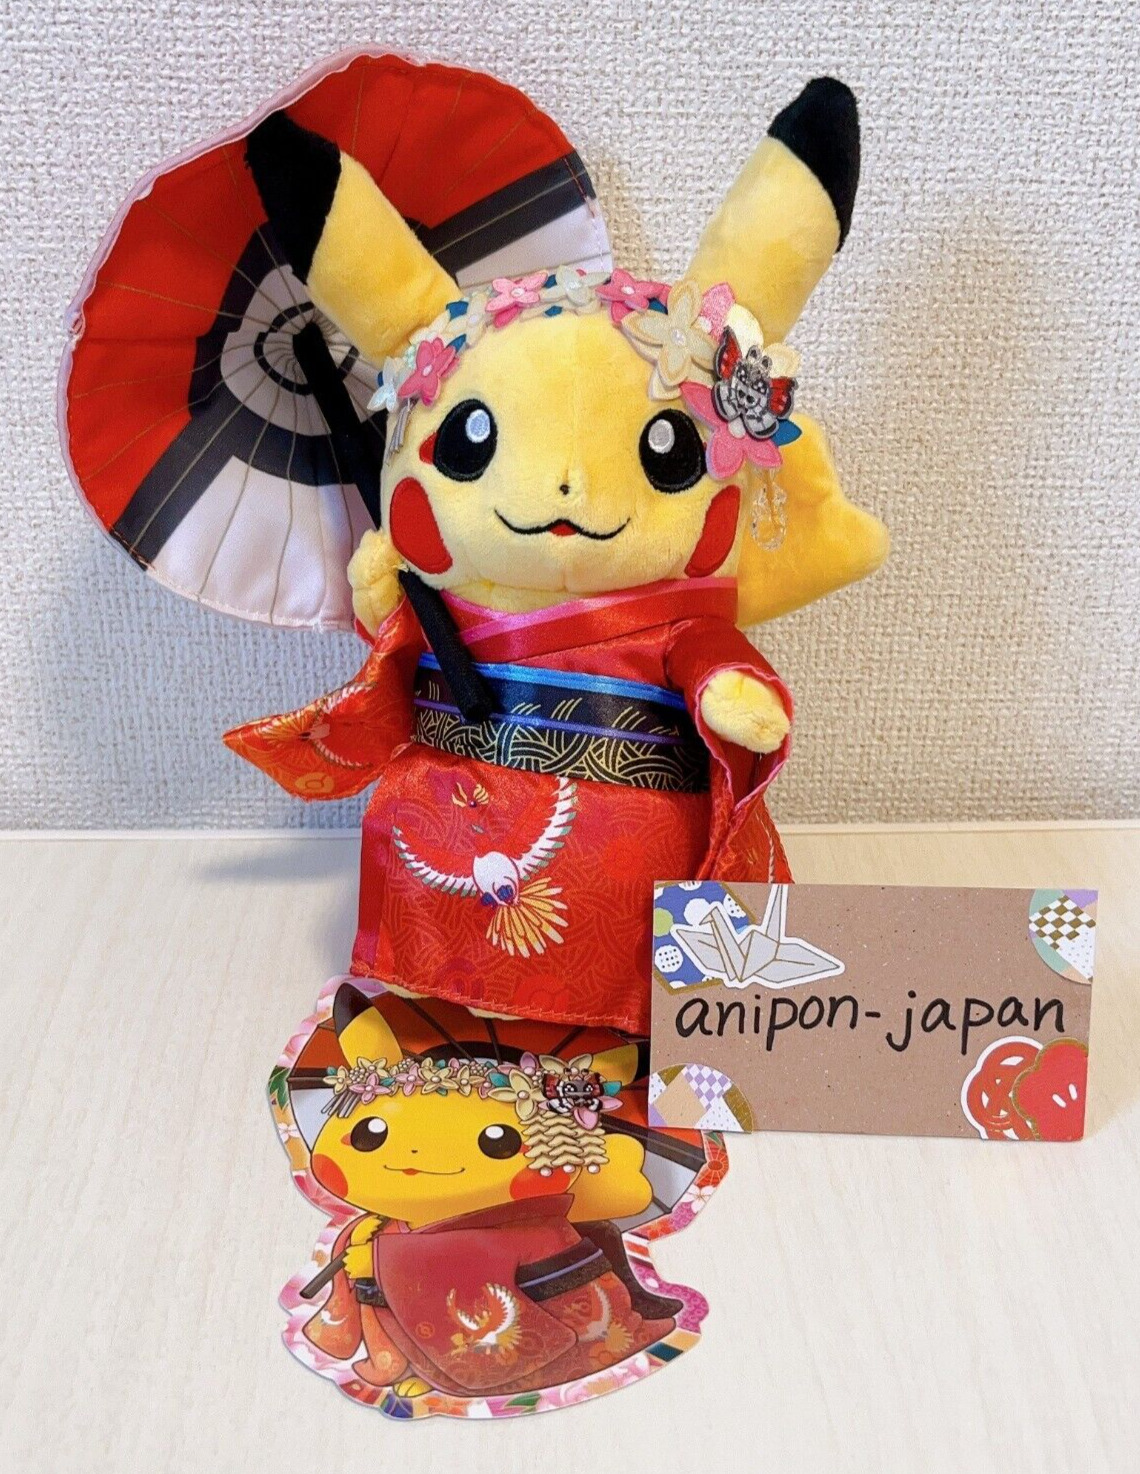 Pokemon Center Kyoto Kimono Pikachu Plush Maiko Geisha New